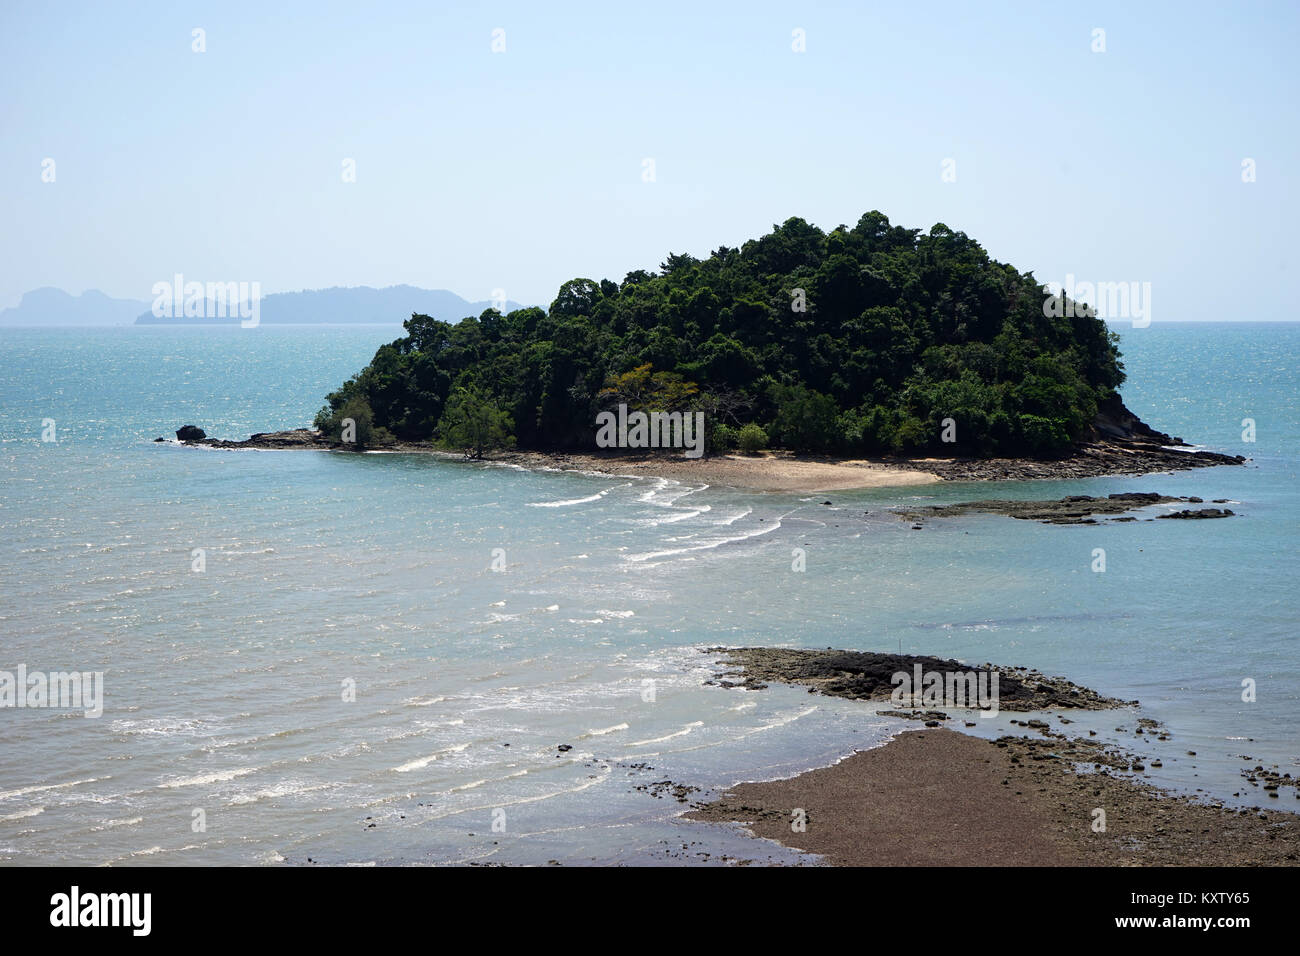 Small island near Ko Lanta island in Thailand Stock Photo